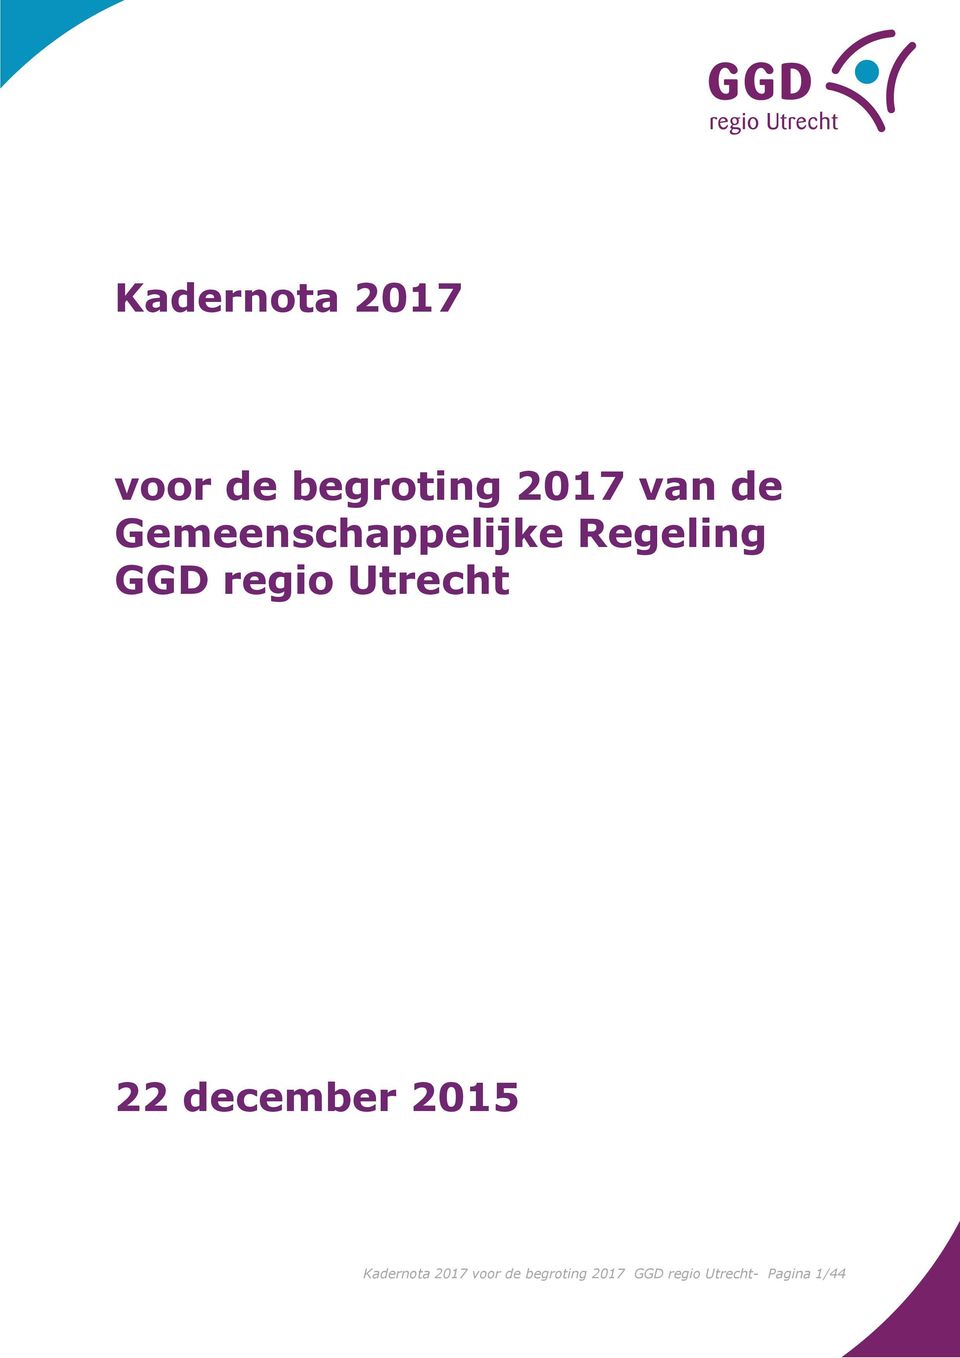 Utrecht 22 december 2015 Kadernota 2017